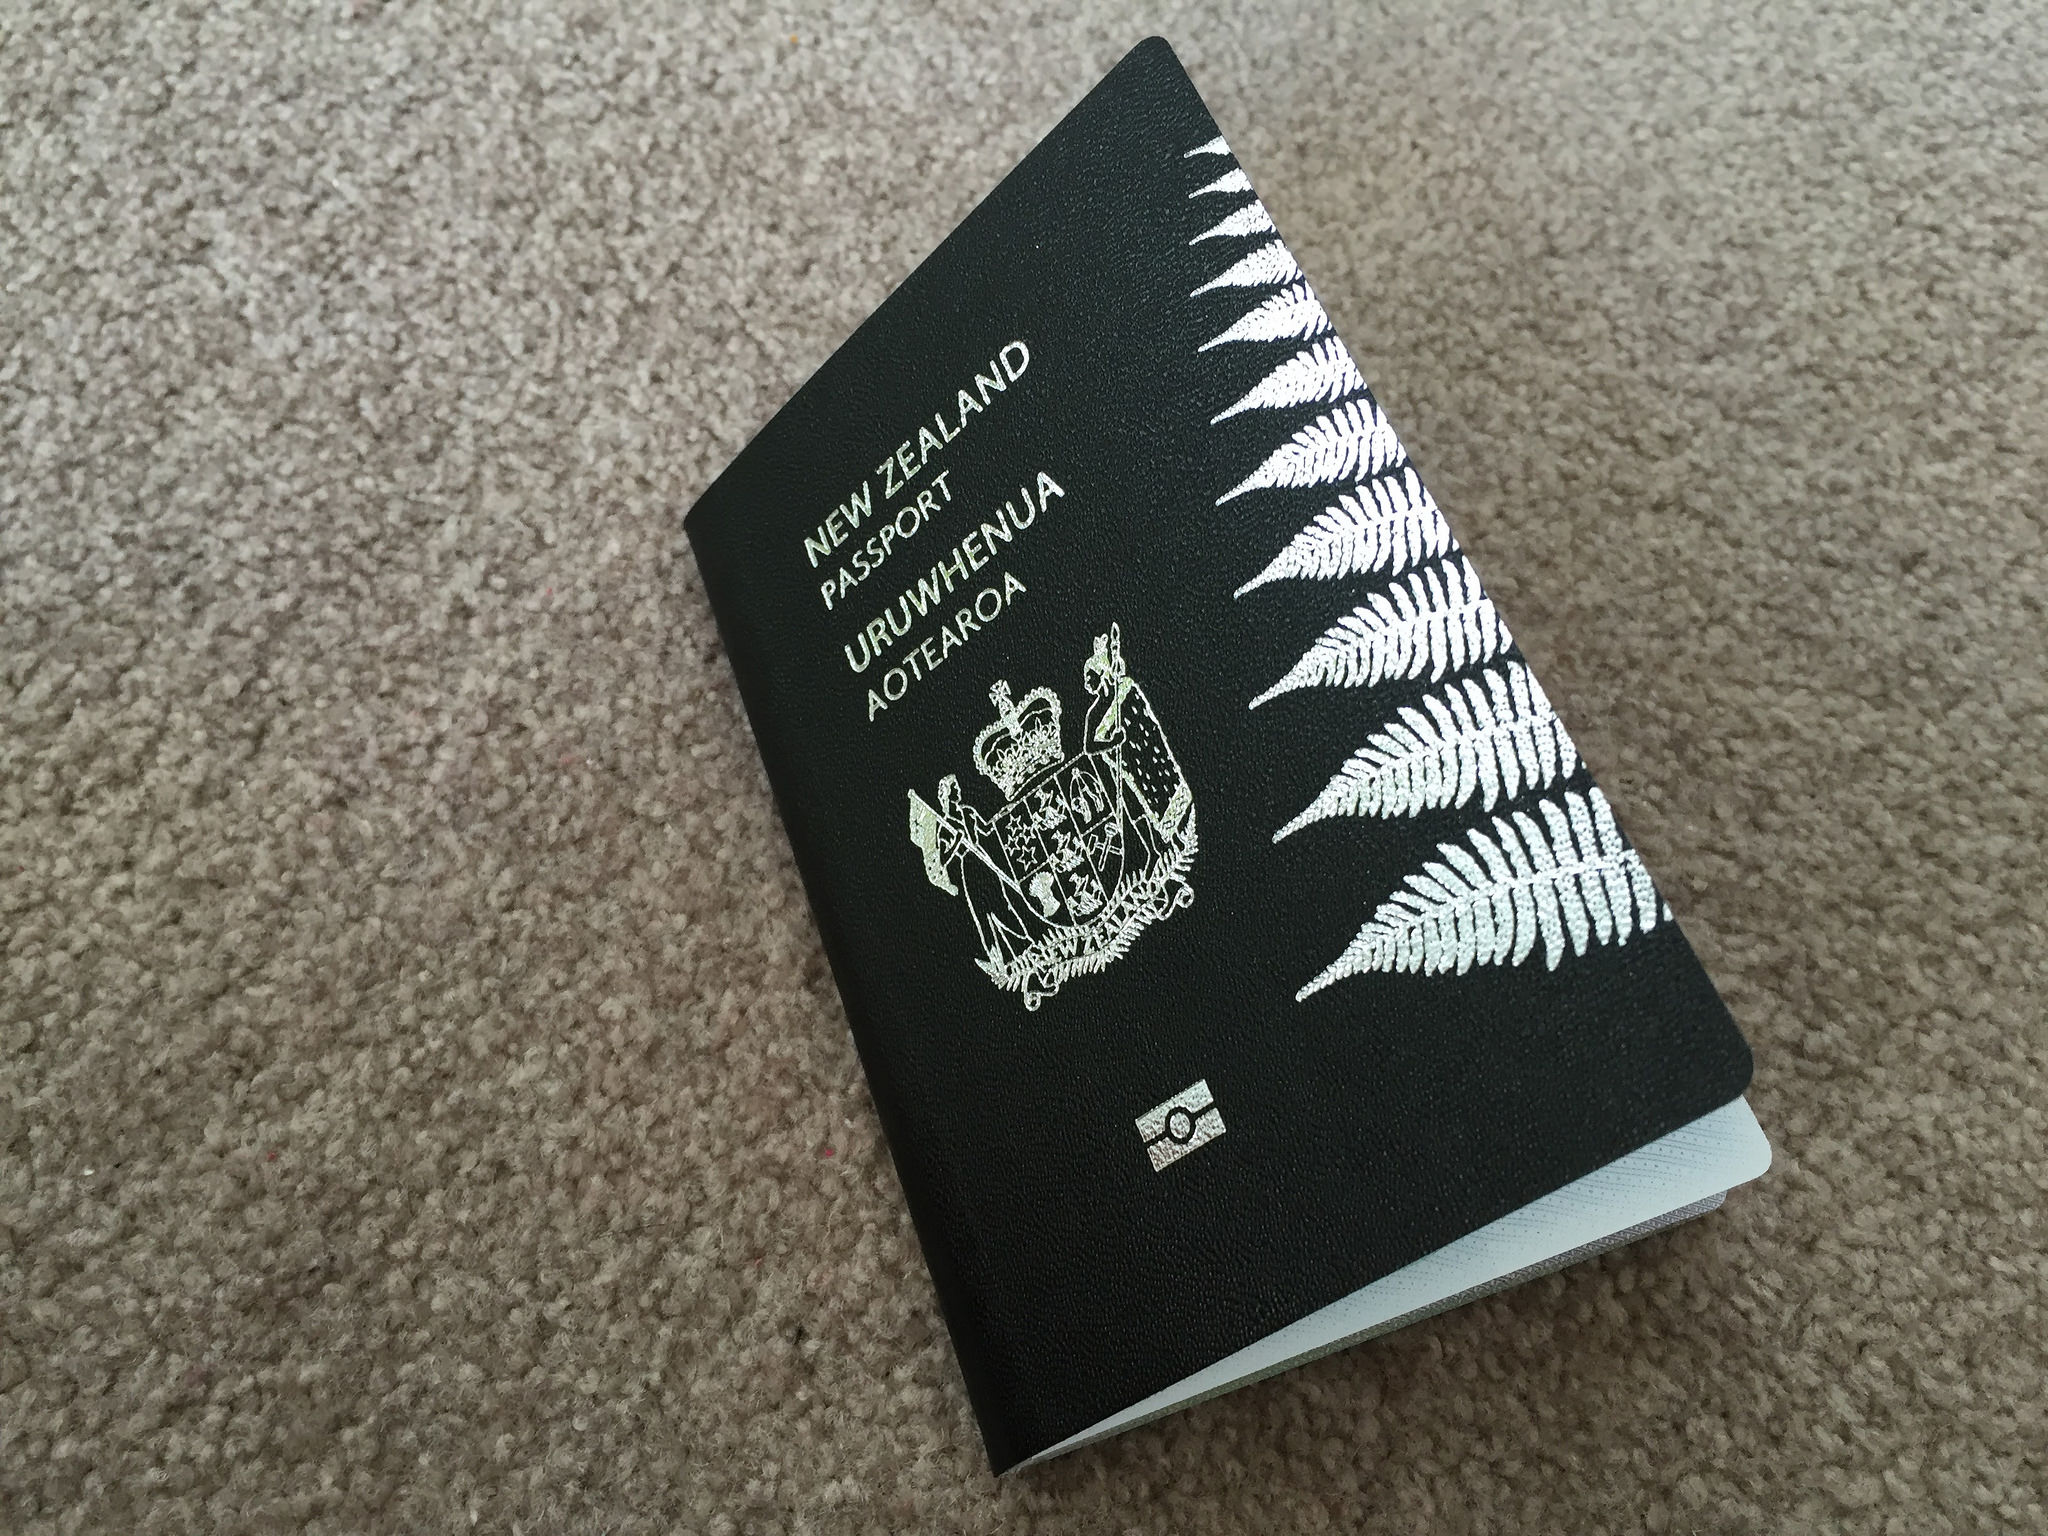 New New Zealand Passport - HD Wallpaper 